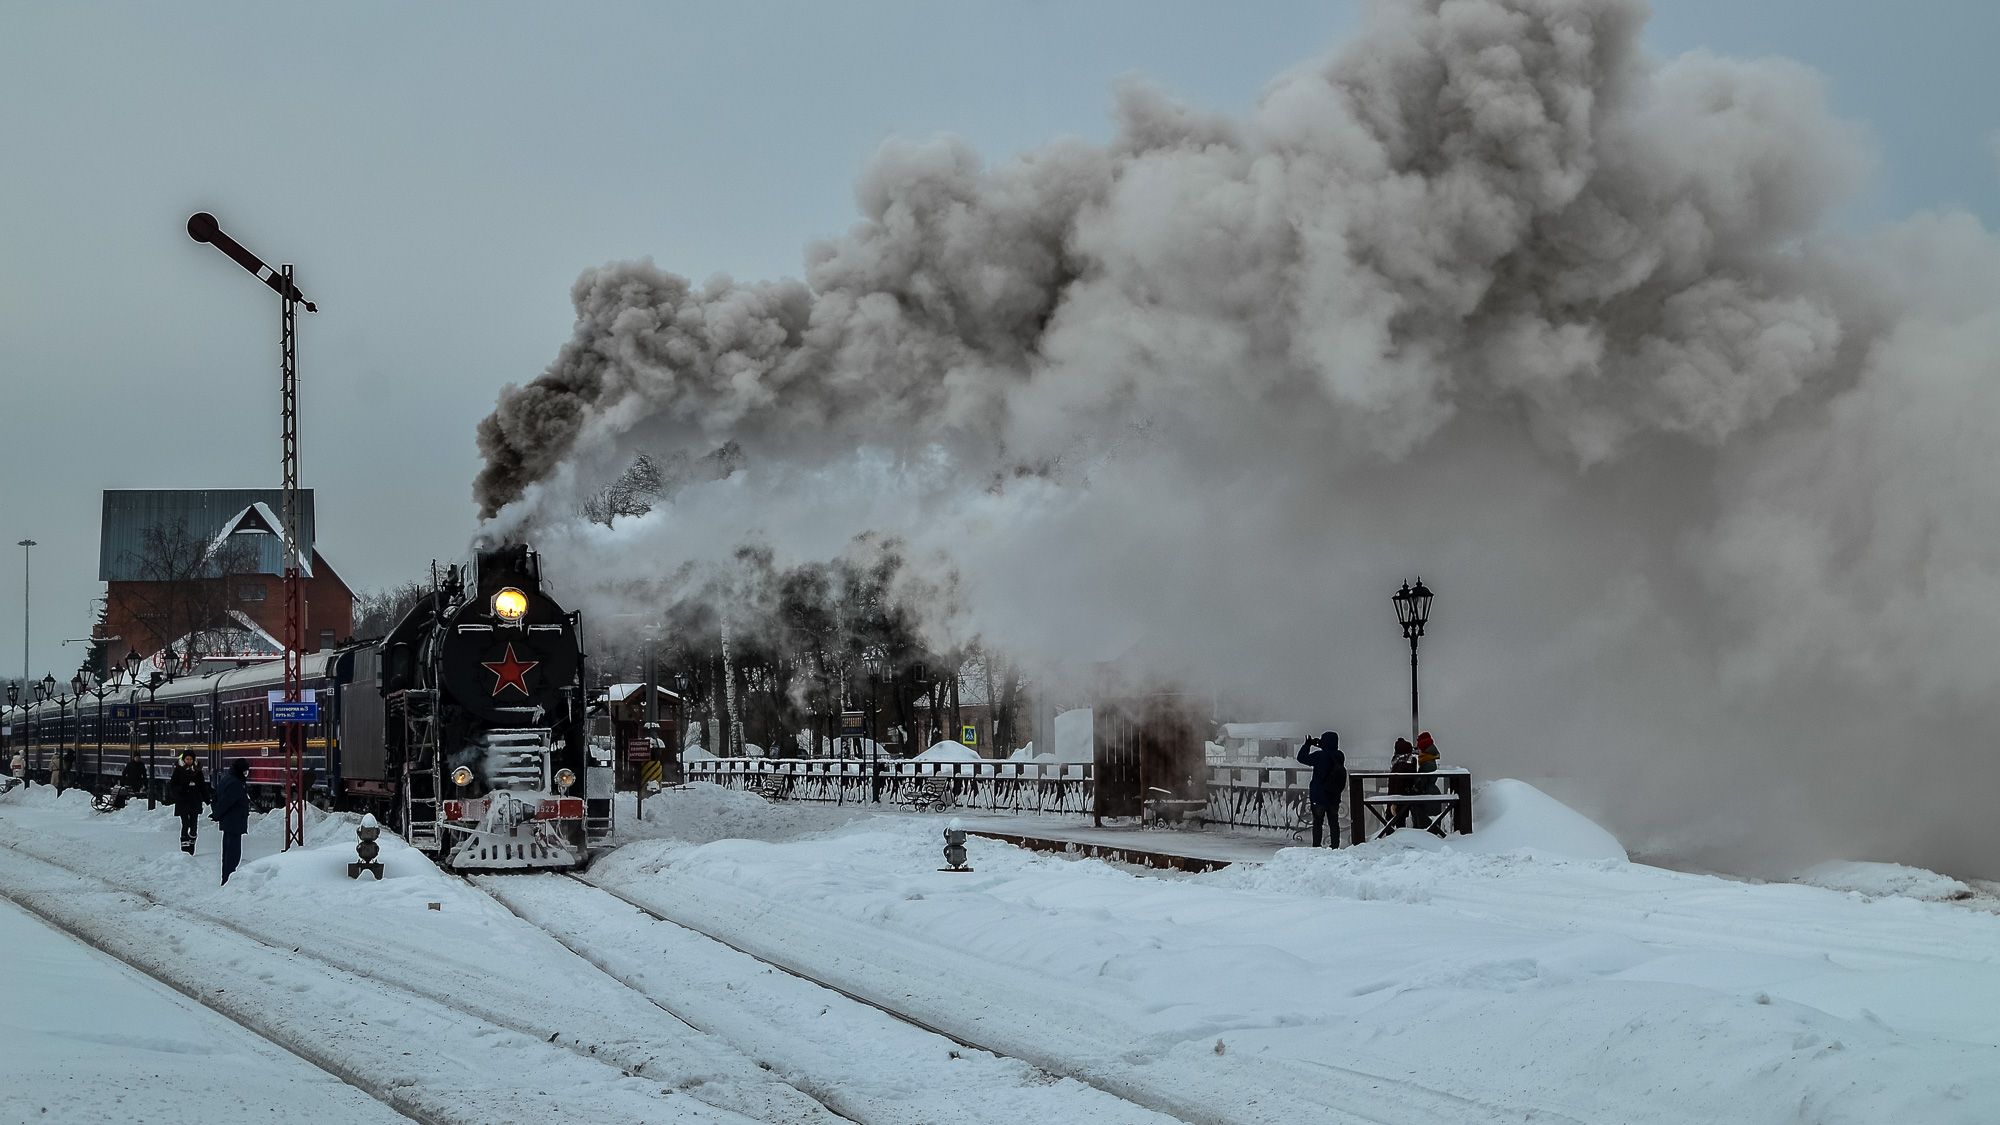 паровоз, зима, снег, вокзал, поезд, движение, город, карелия, репортаж, люди, Валерий Верещако